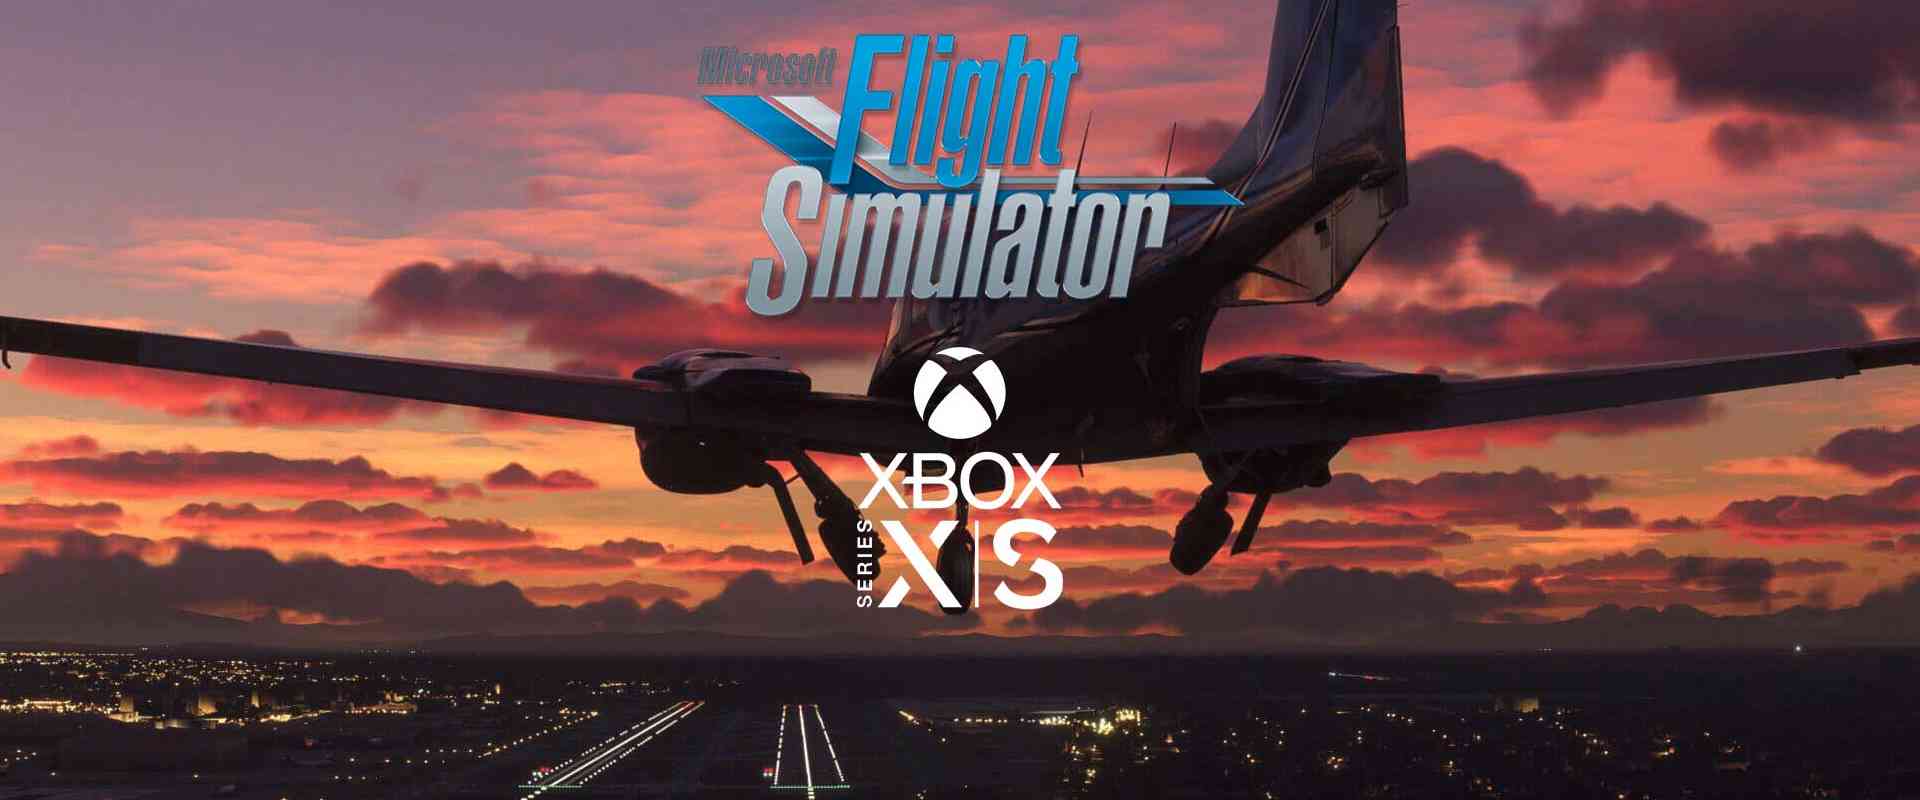 microsoft flight simulator xbox release sim5update